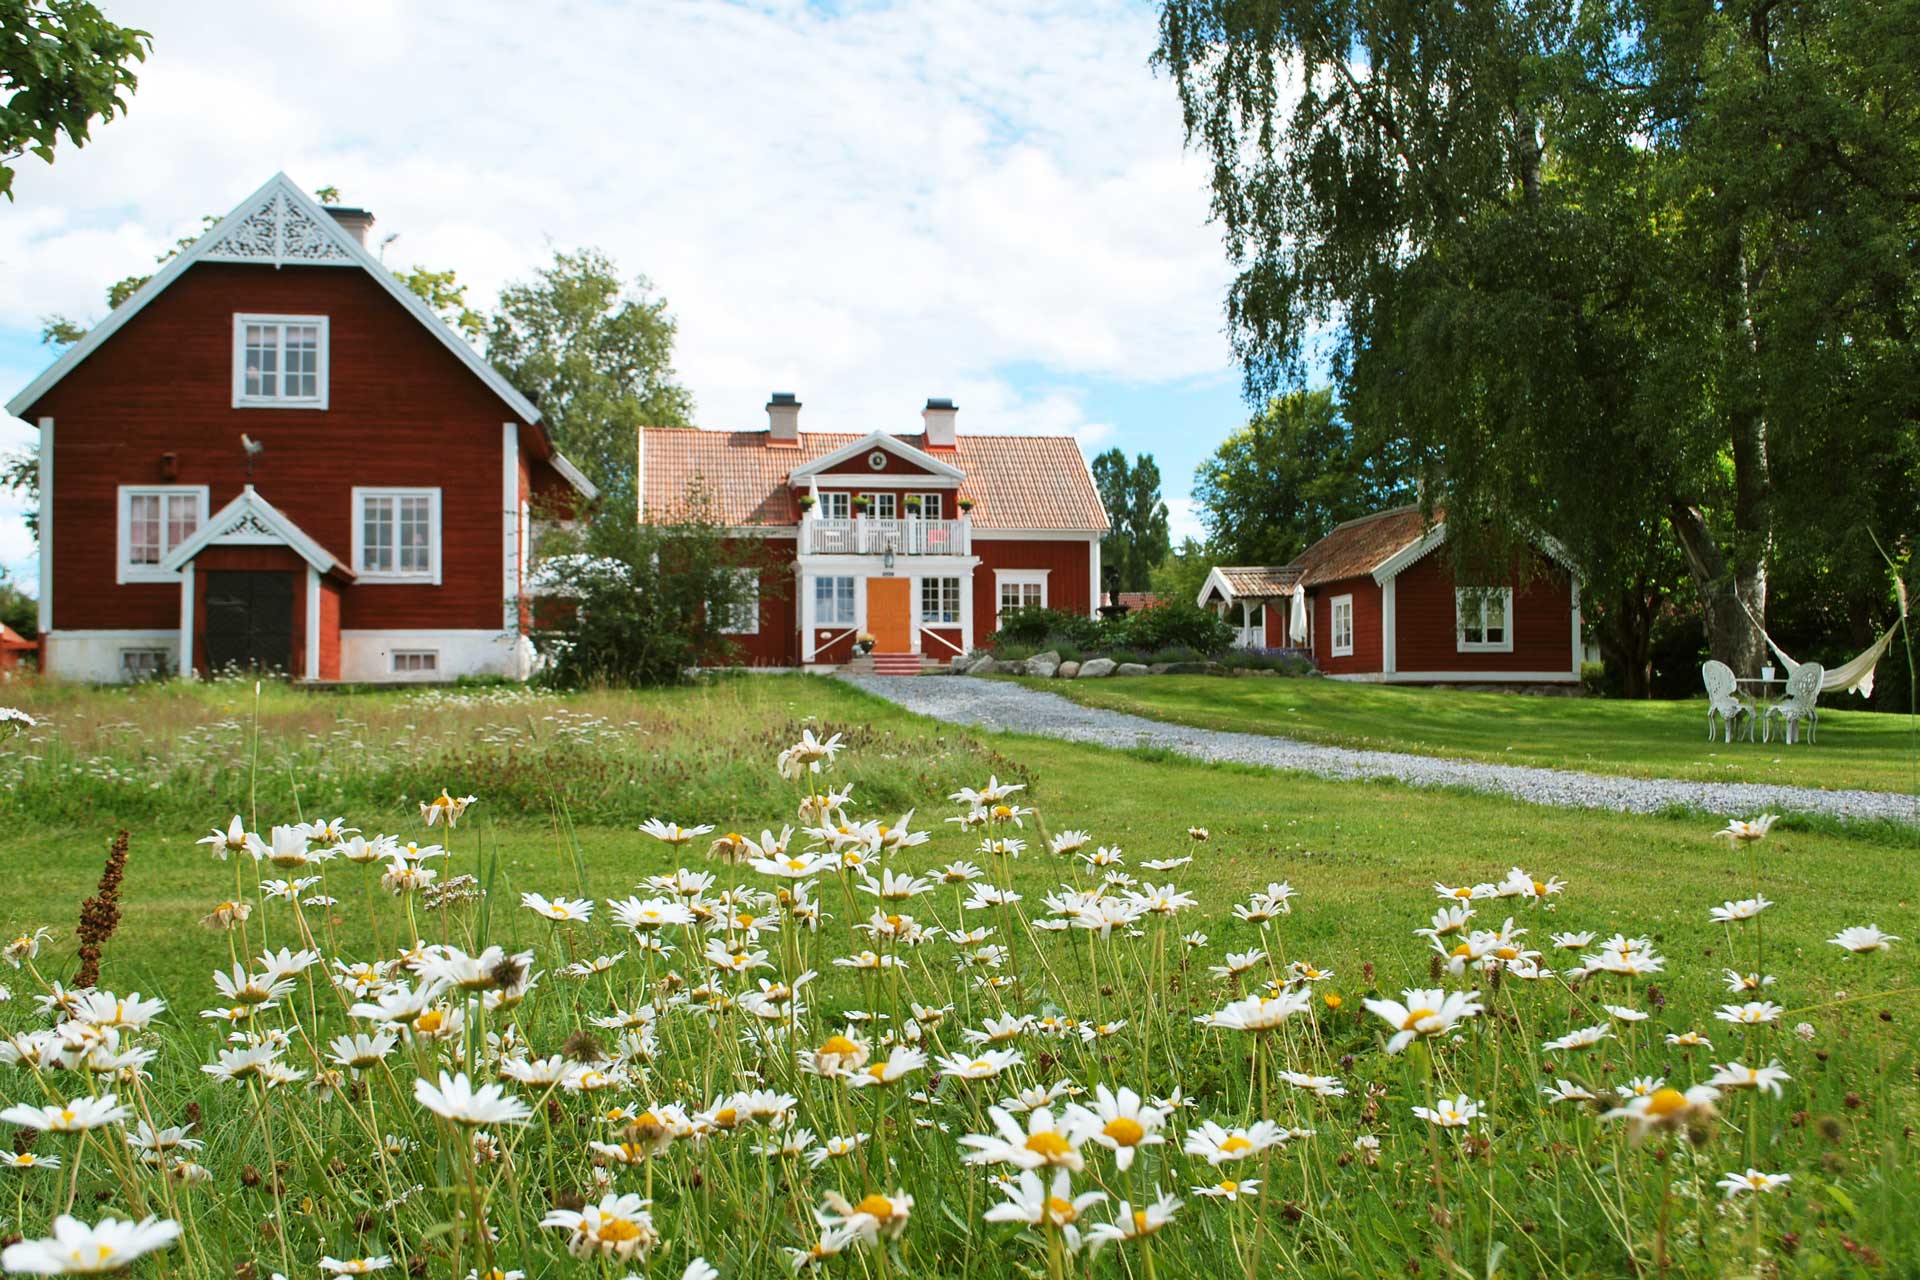 Gårdshus hos Hem till Gården AB med sommaräng i förgrund. Fotograf: Pressbild, Hem till Gården